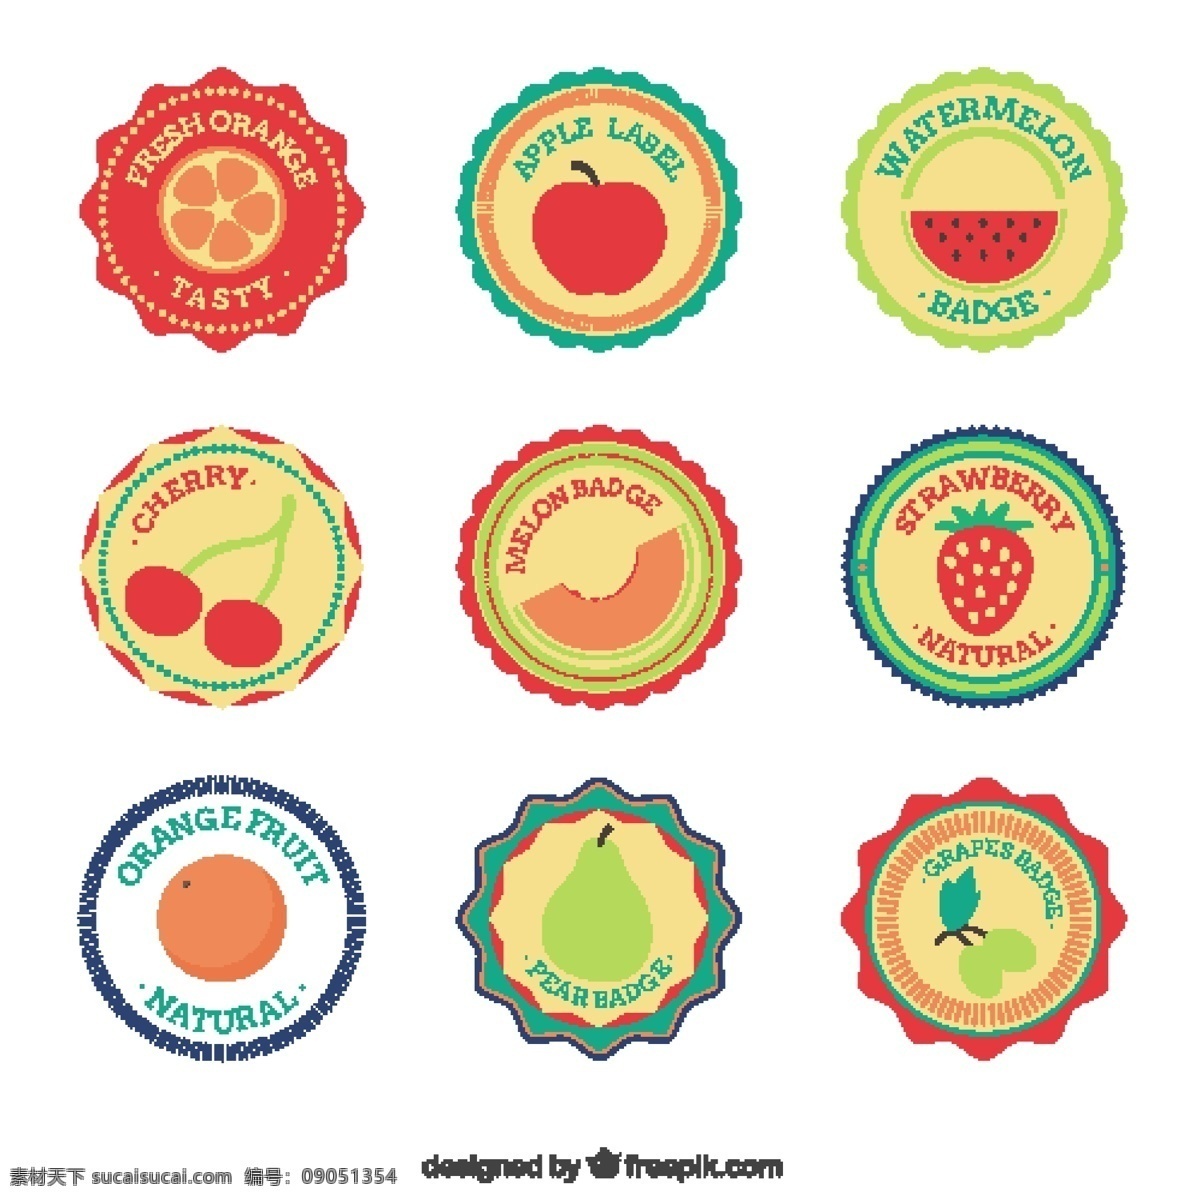 平板 水果 徽章 选择 采购产品食品 标签 夏天 颜色 橙色 热带 苹果 自然 健康 平面设计 草莓 贴纸 装饰